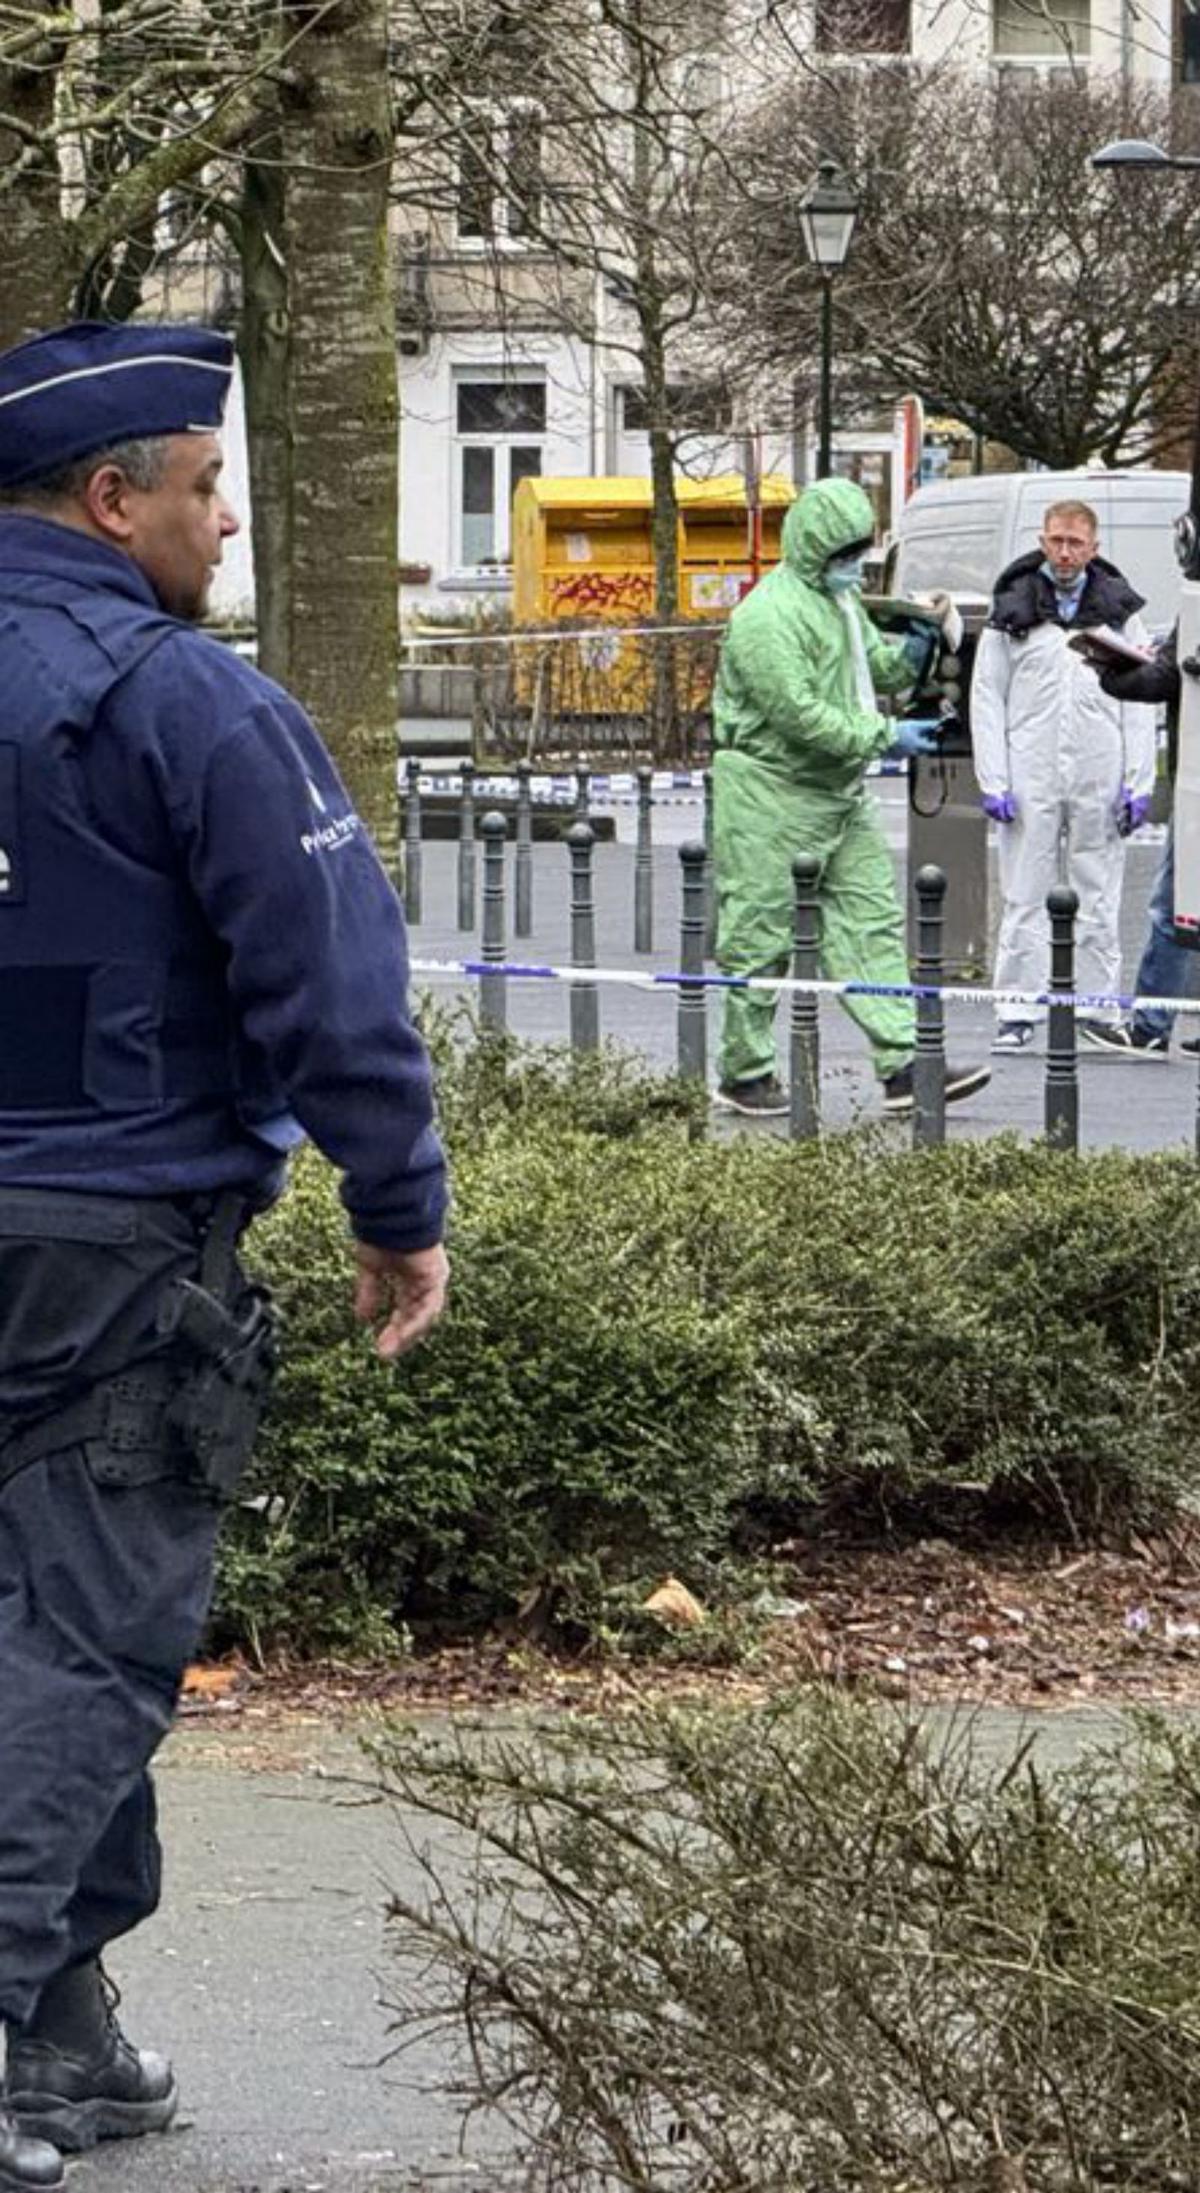 Els tirotejos entre narcotraficants provoquen l’alarma a Brussel·les